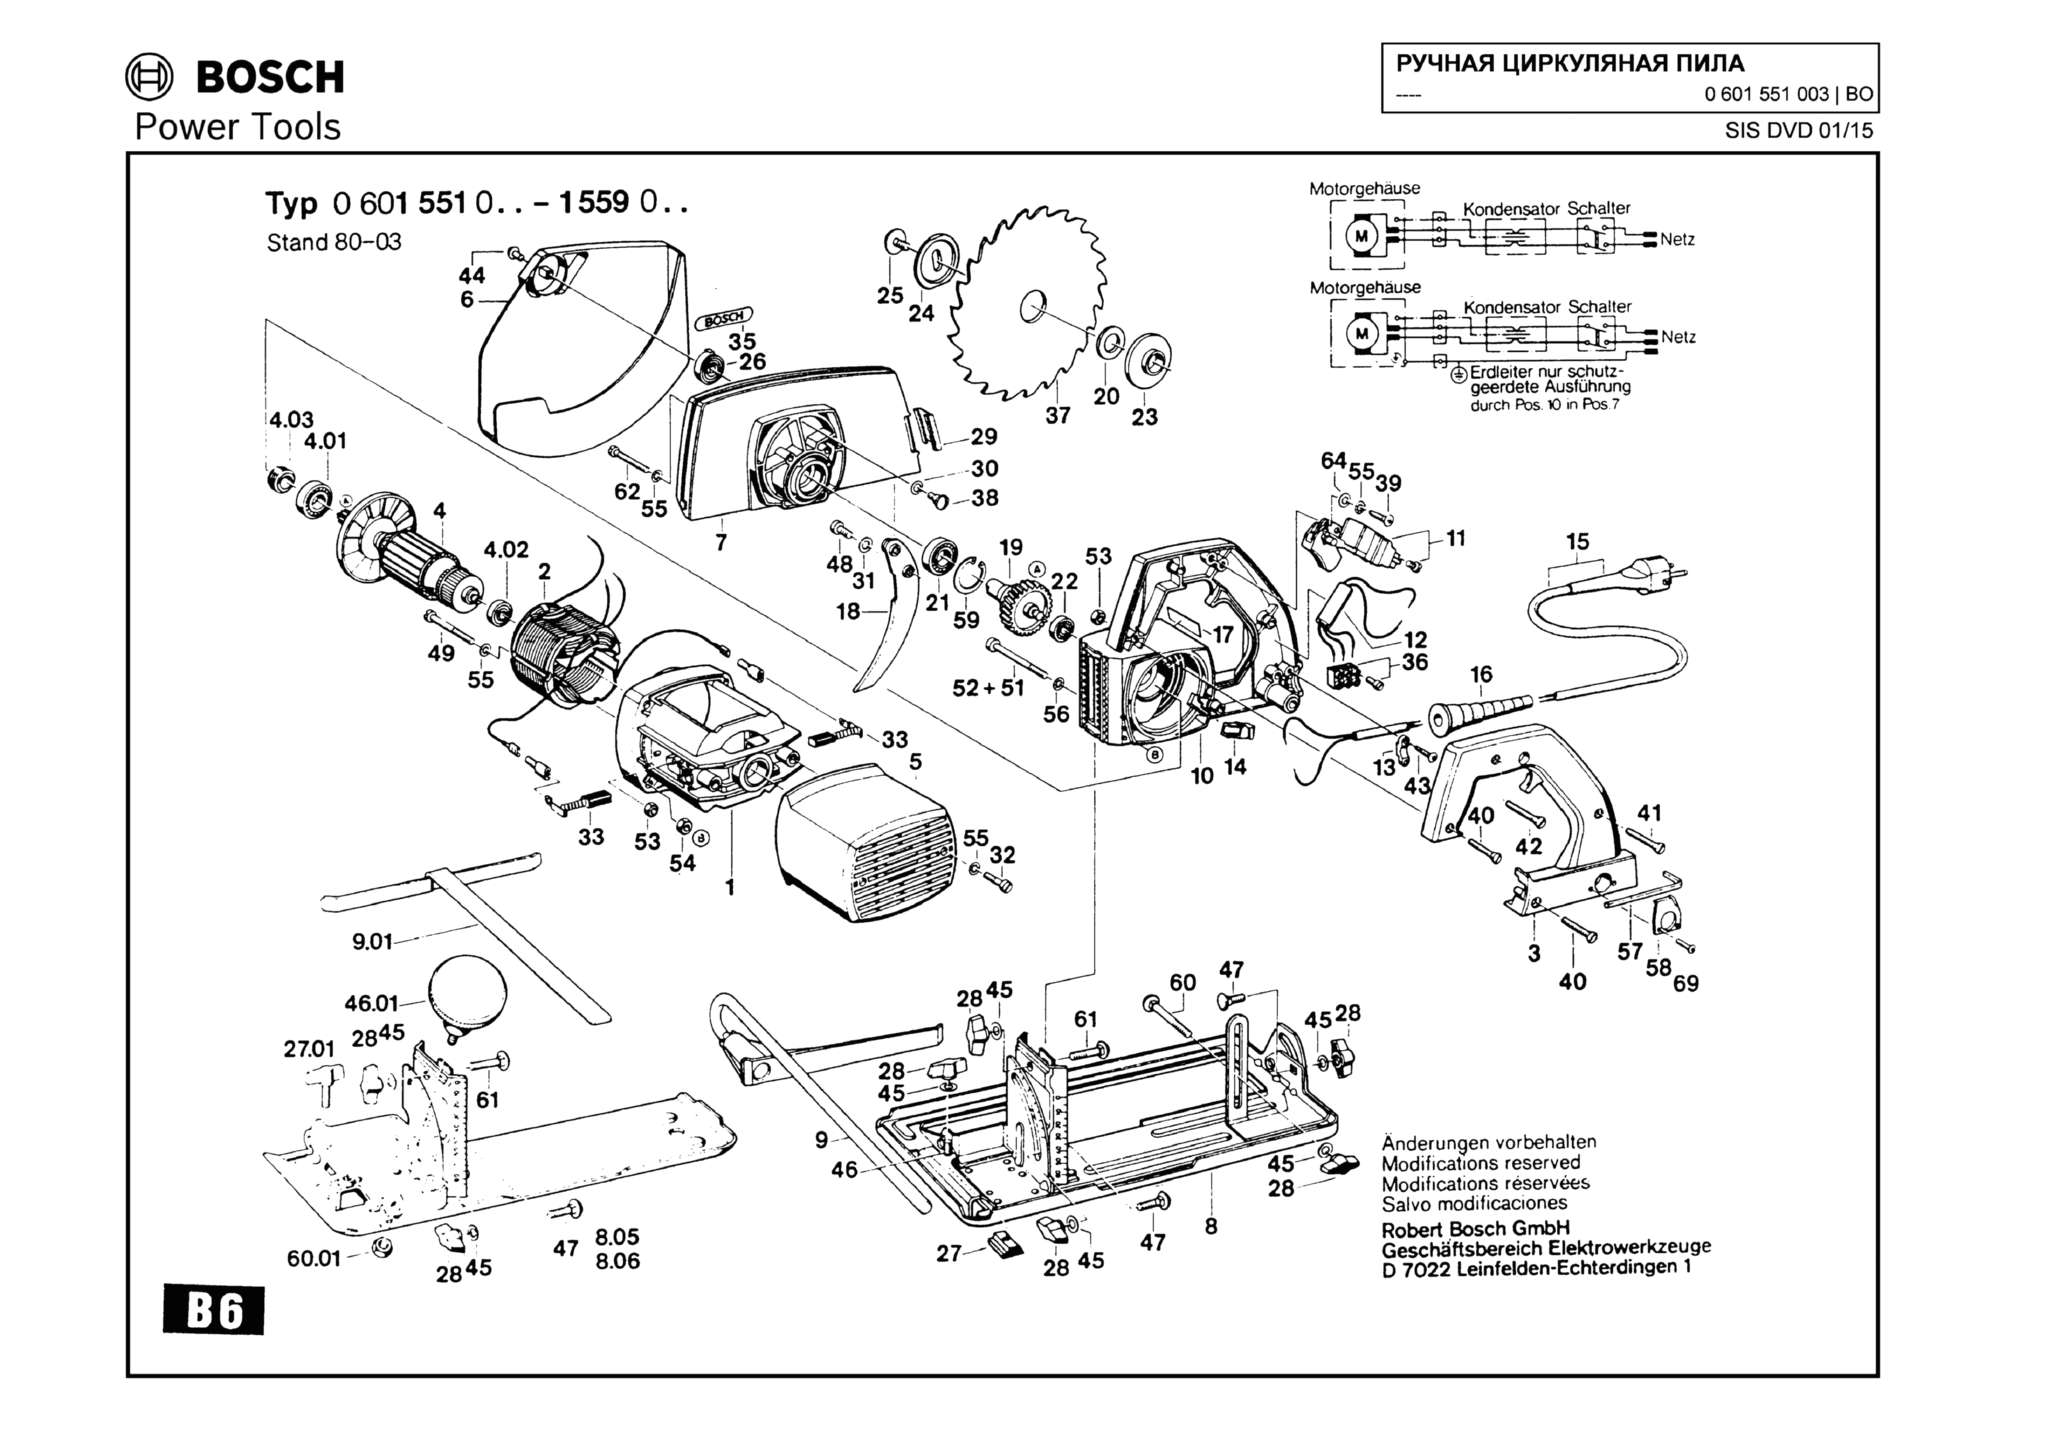 Запчасти, схема и деталировка Bosch (ТИП 0601551003)